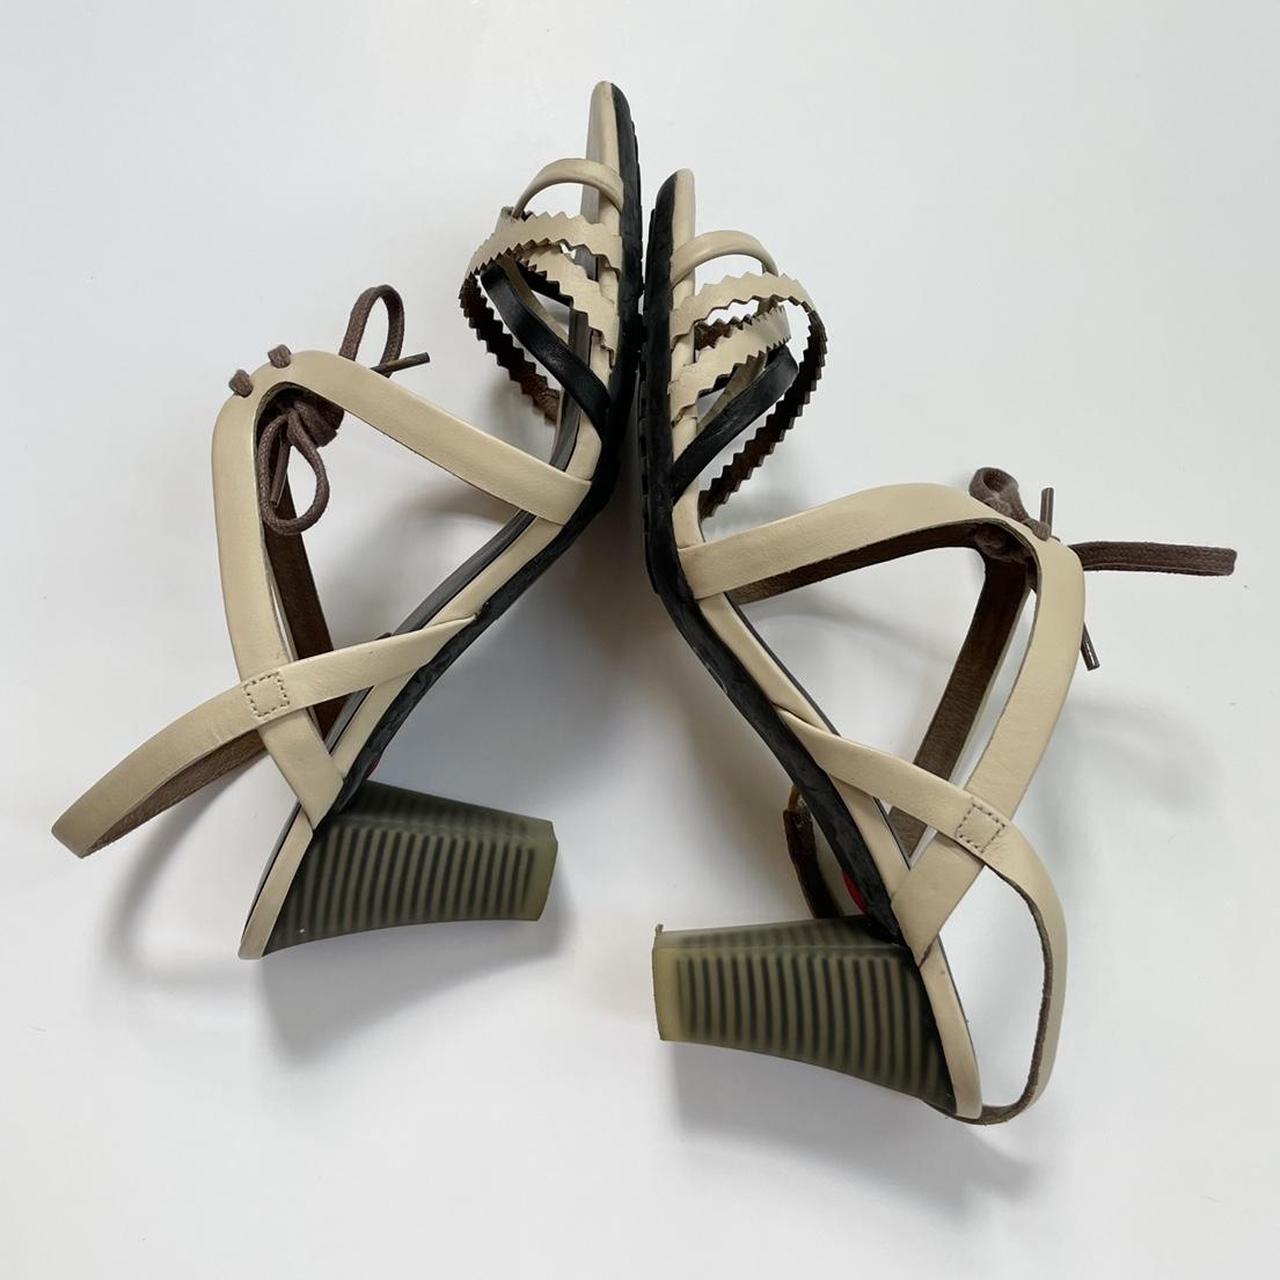 Product Image 3 - Camper Sandals. EU 38

Camper heeled